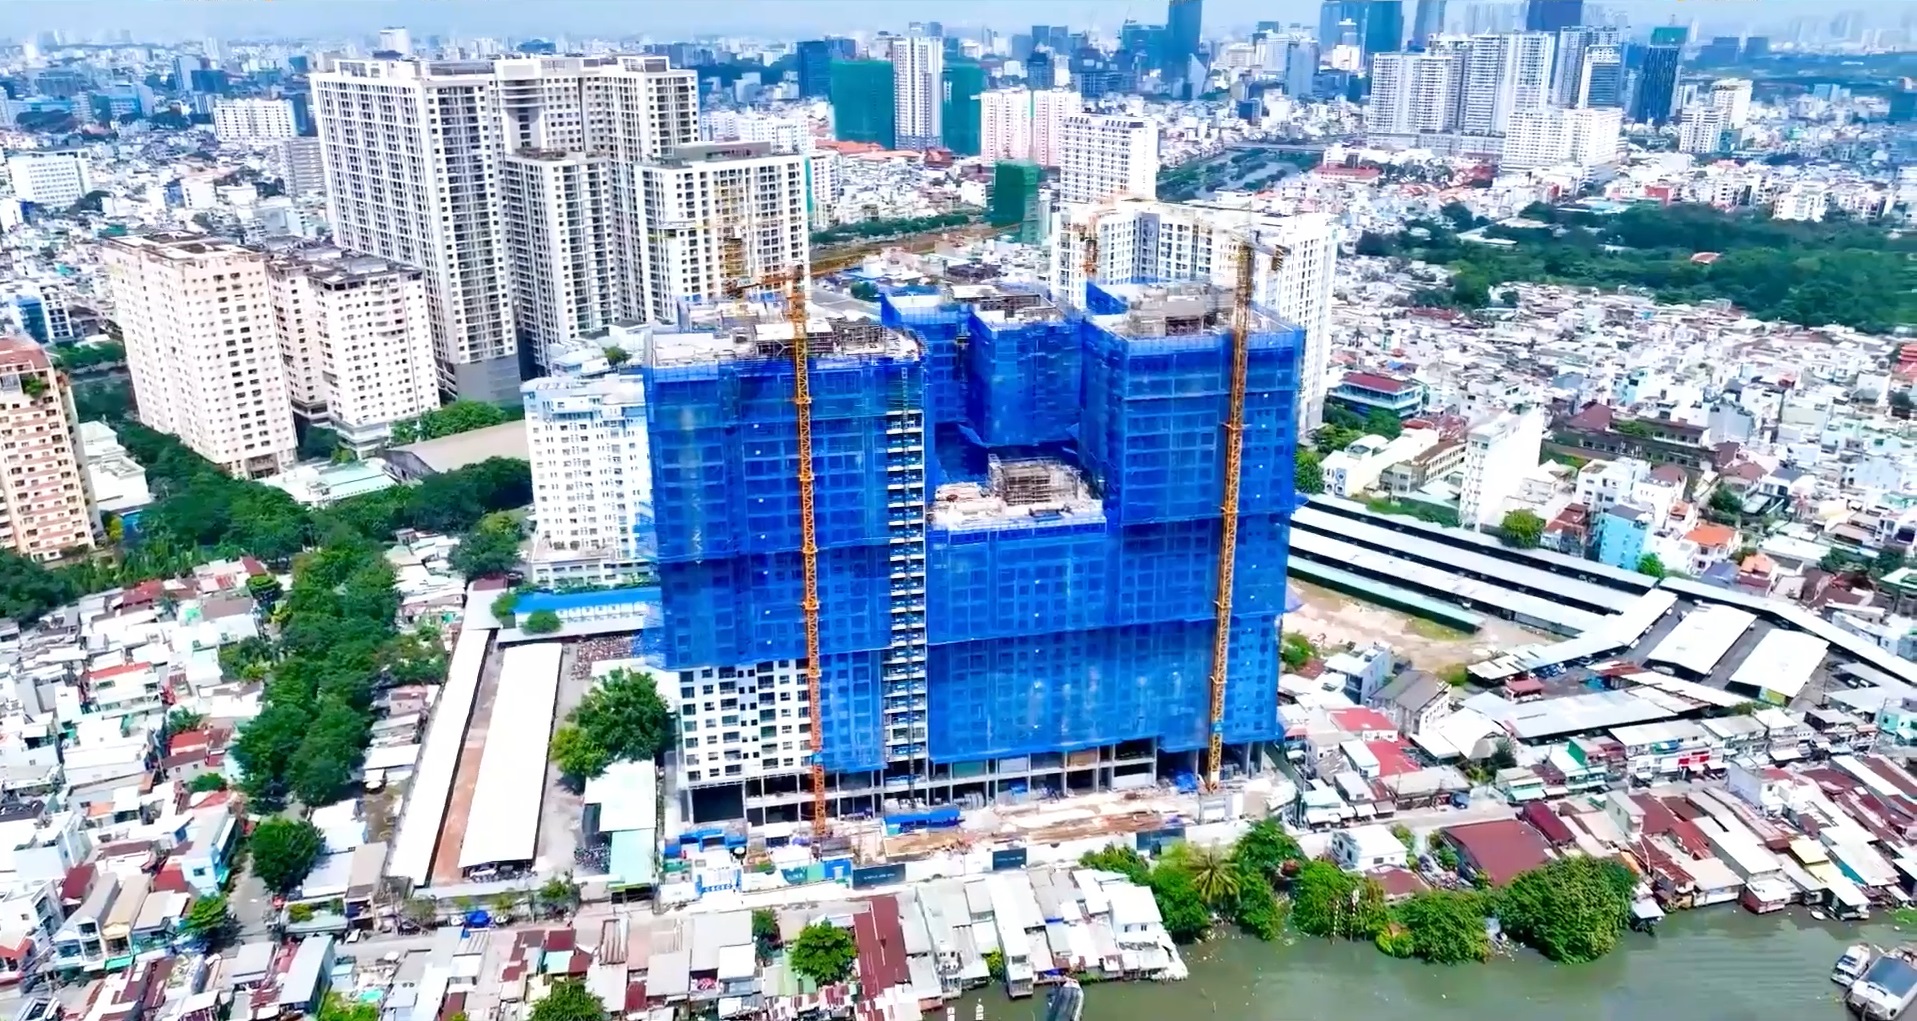 Tiến độ xây dựng căn hộ delasol quận 4 - tháng 11/2022